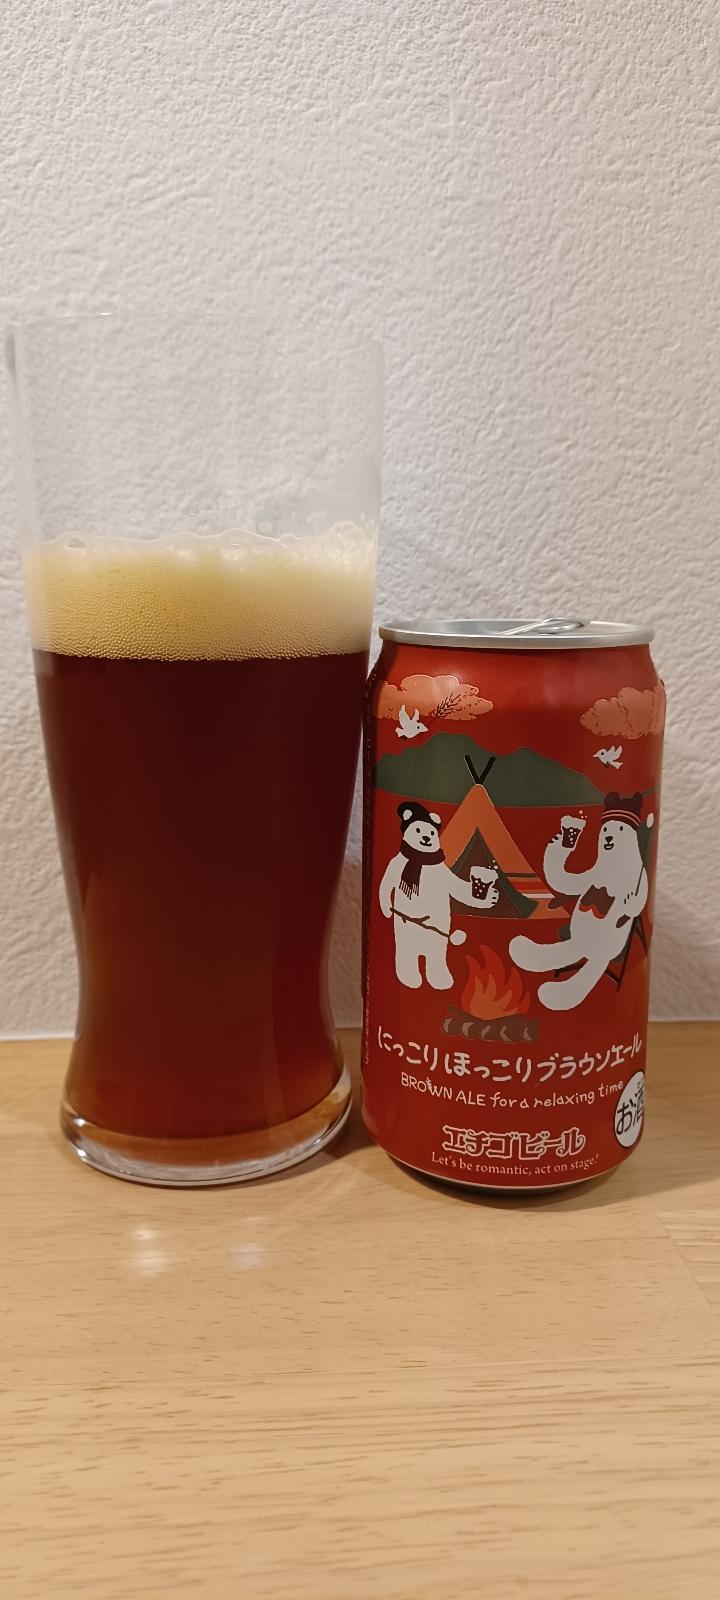 Echigo Nikkori Hokkori Brown Ale